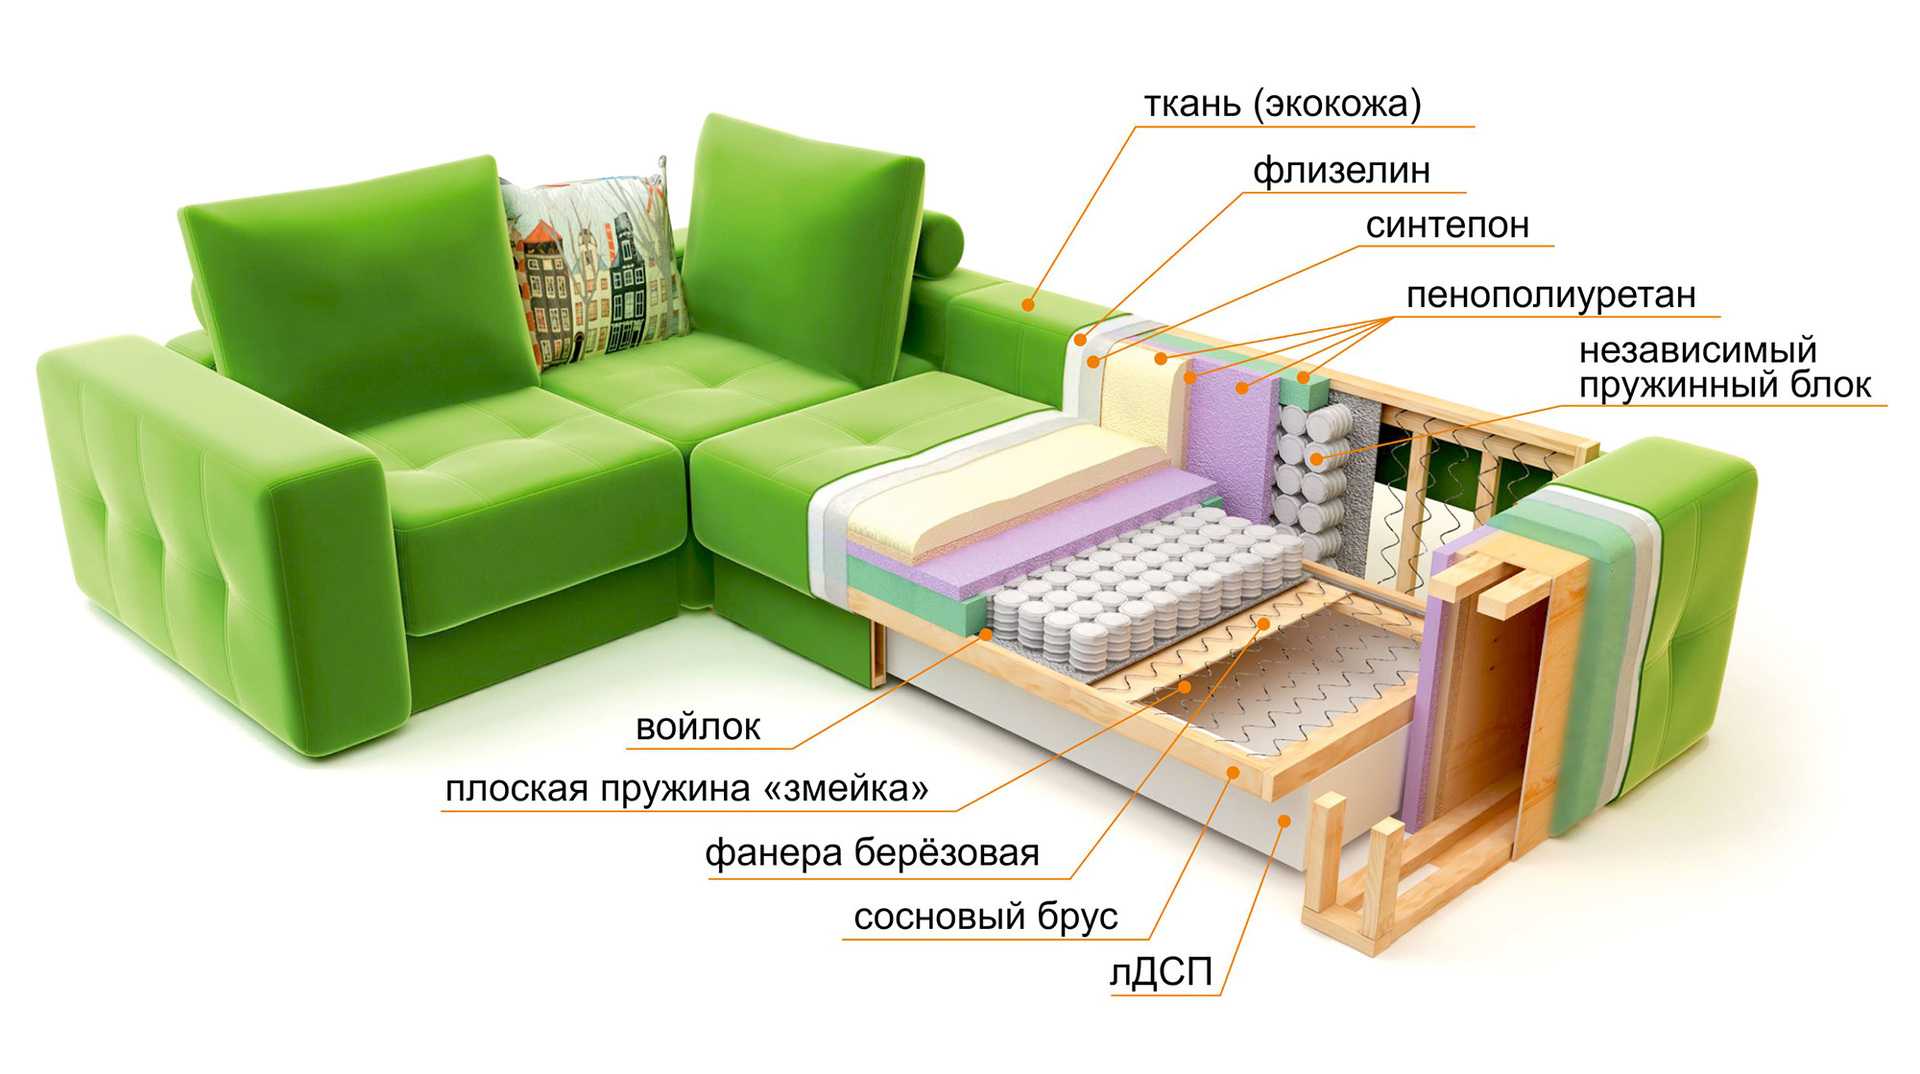 Какой поролон используют для мебели?